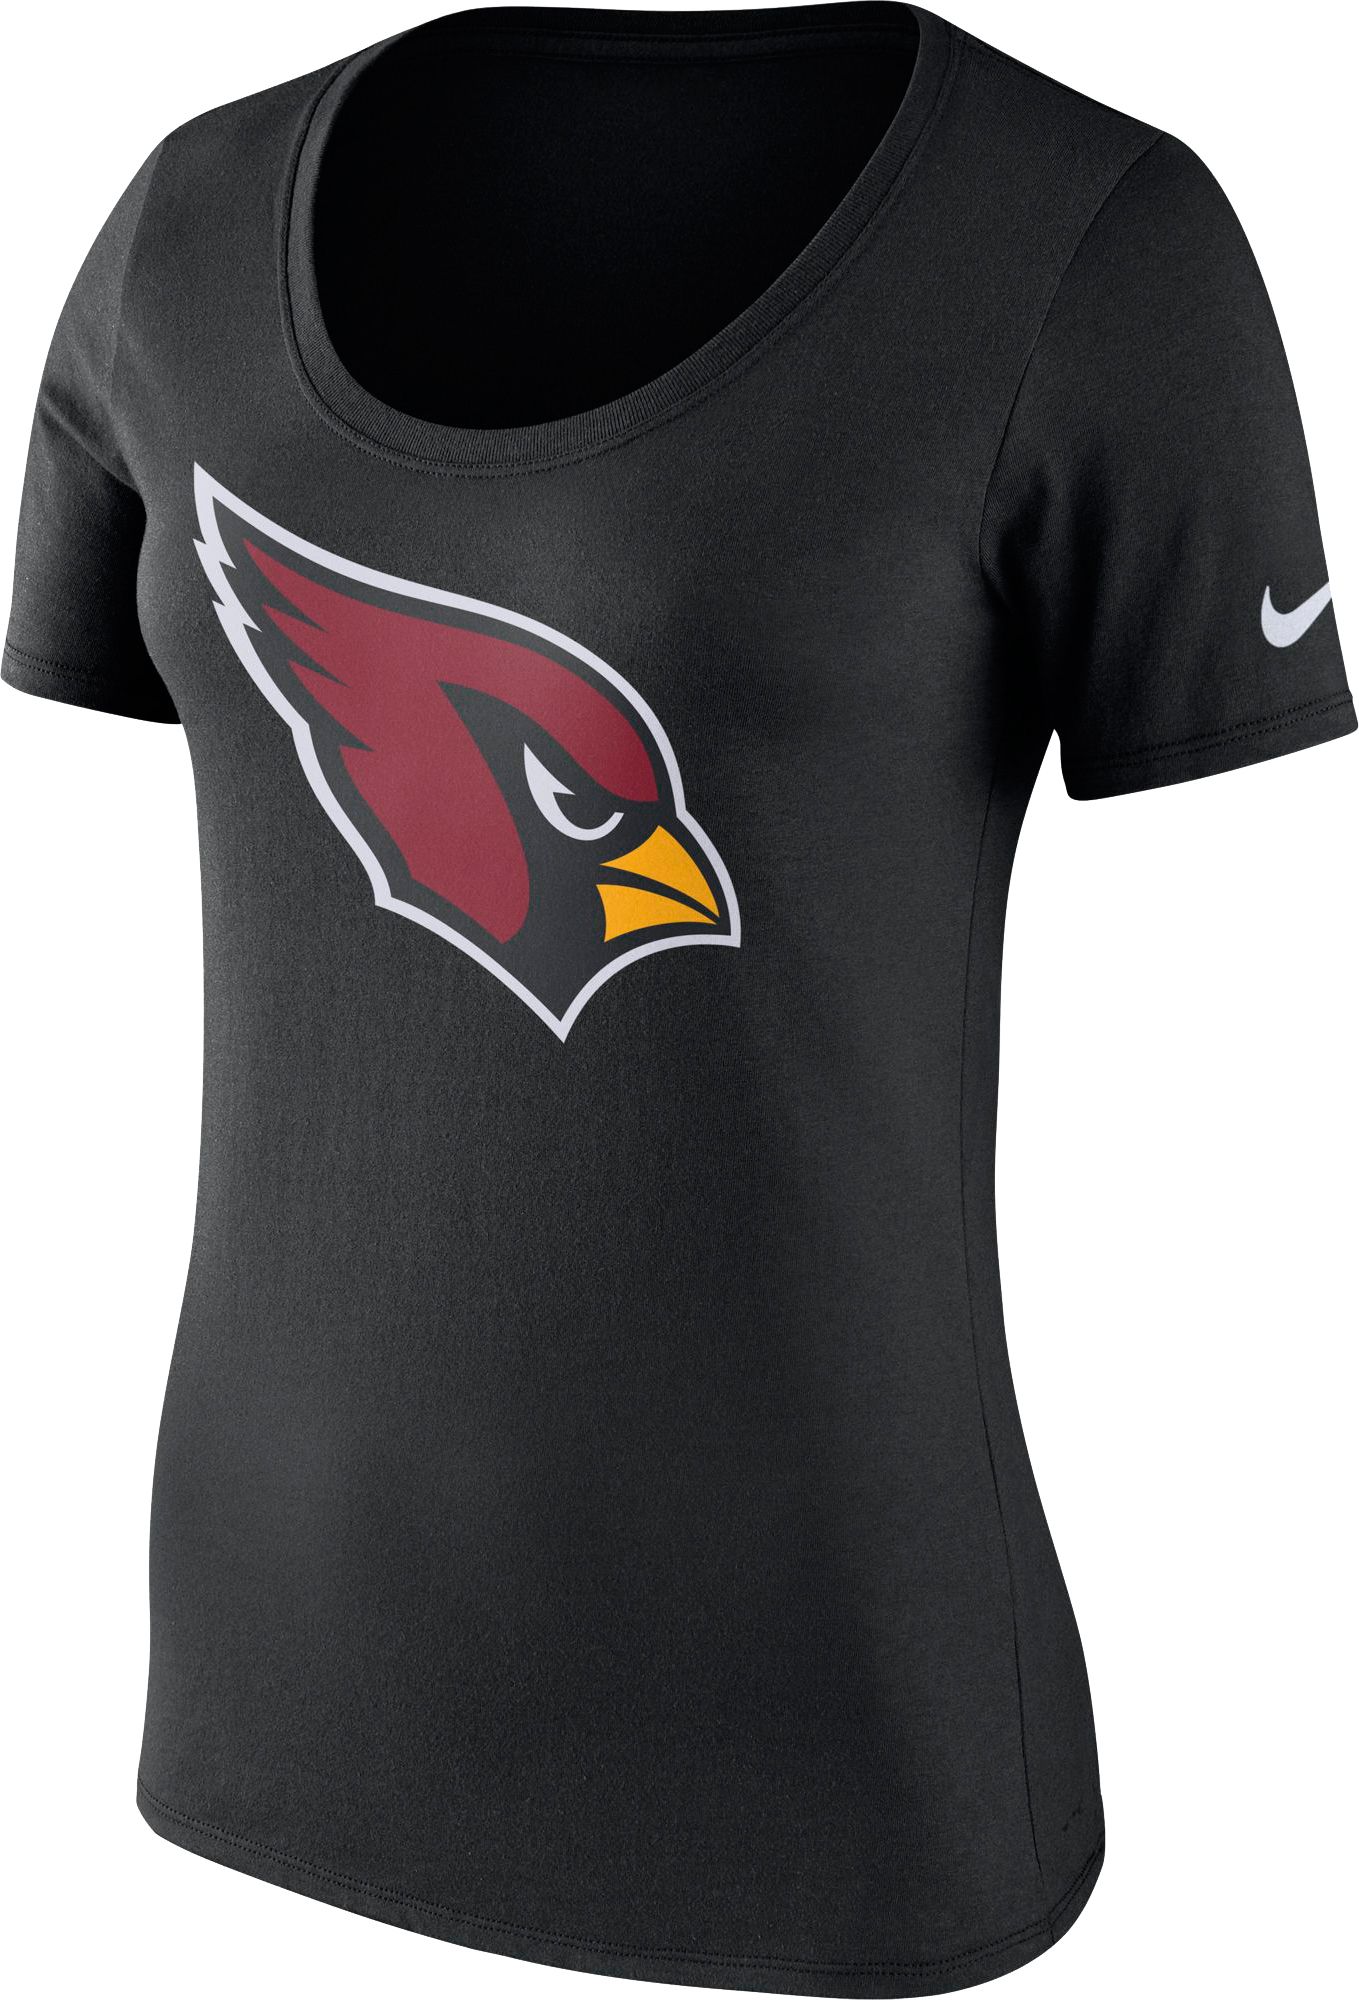 arizona cardinals women's jersey